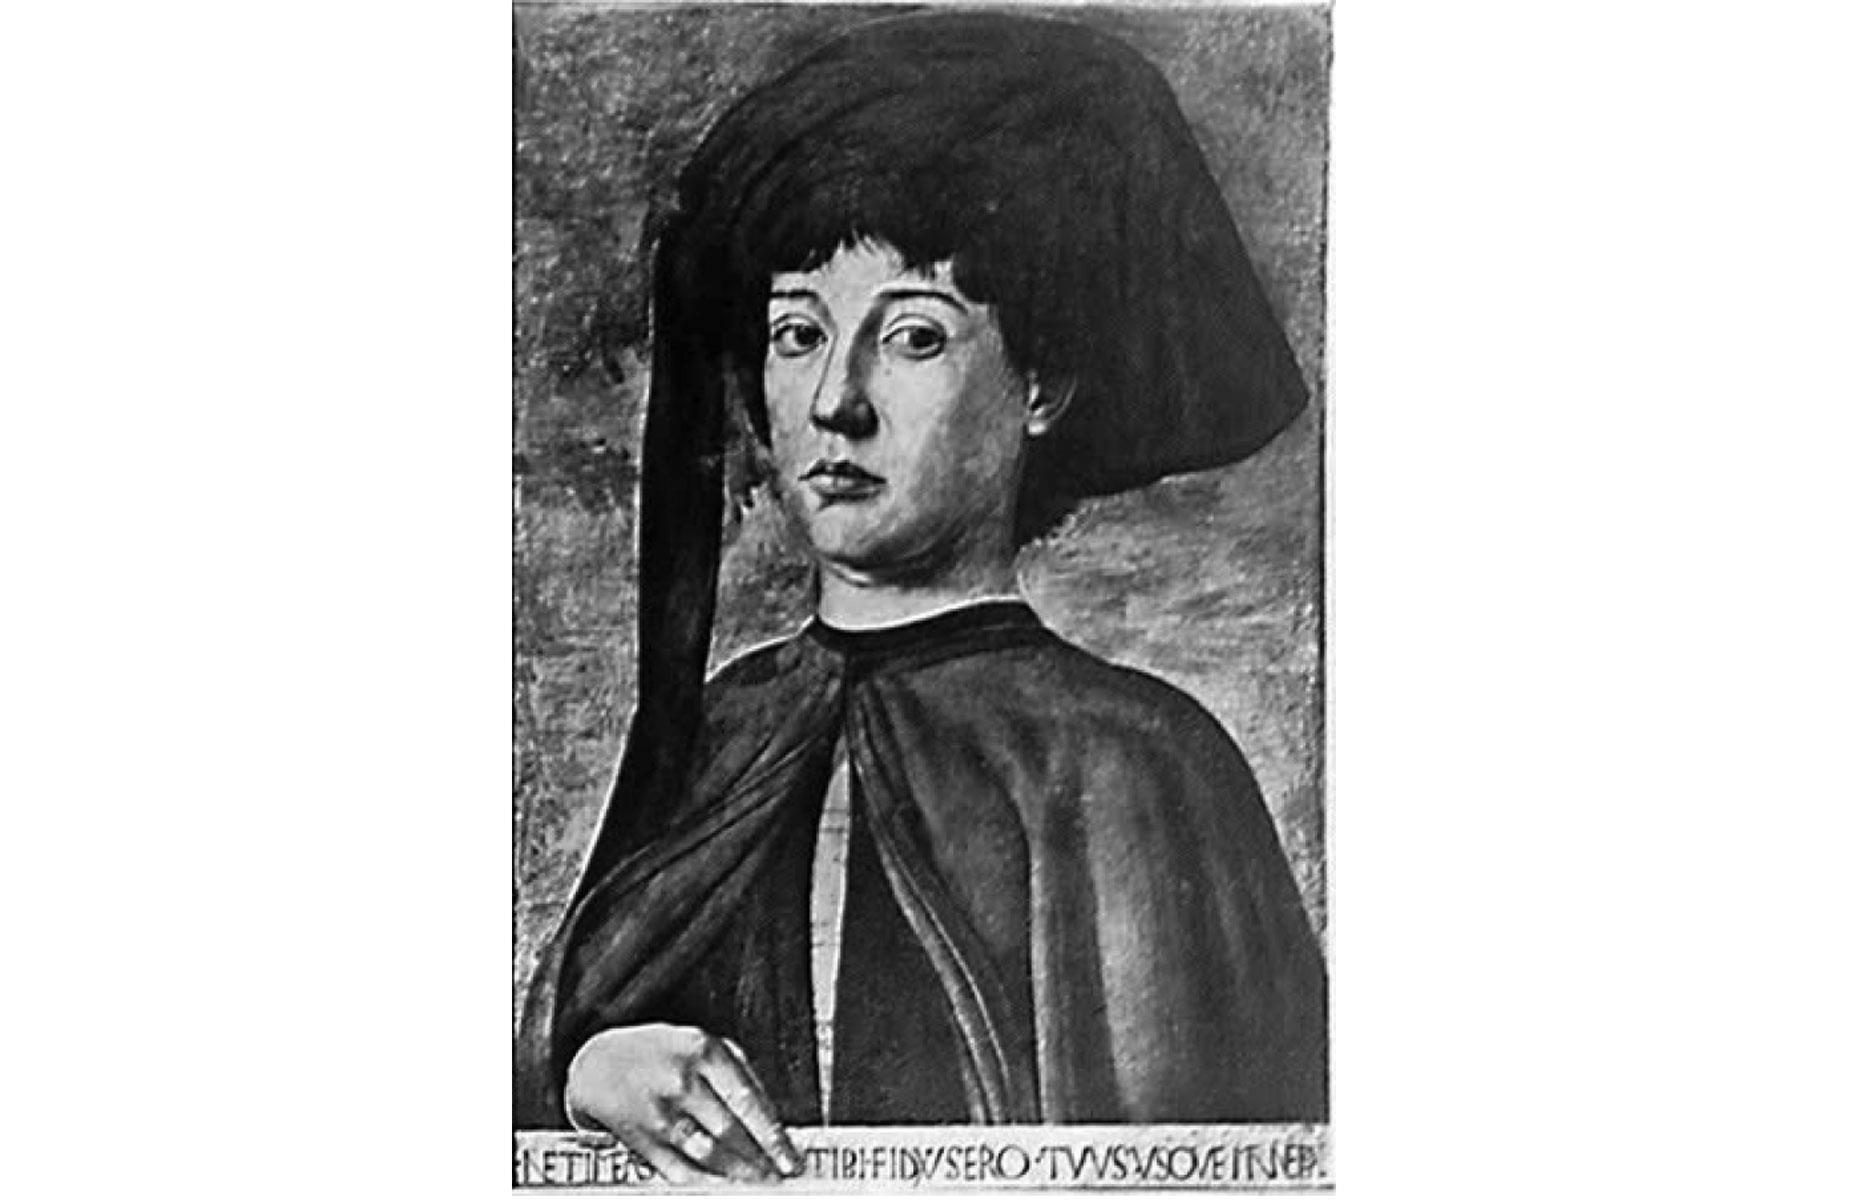 Botticelli's Portrait of a Man